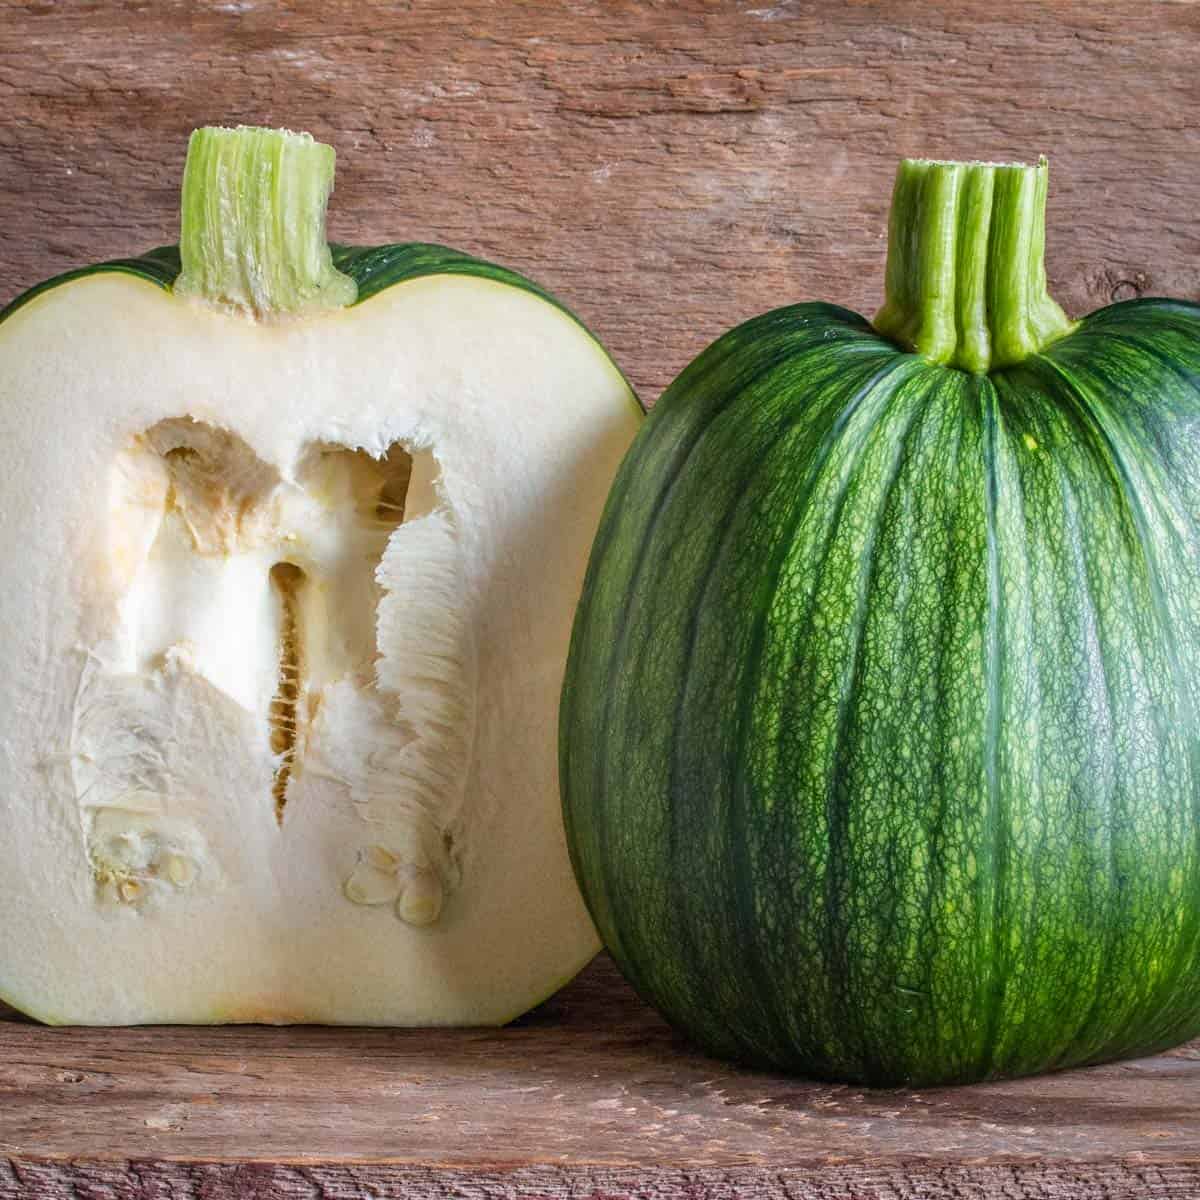 a green pumpkin cut in half showing seeds. 